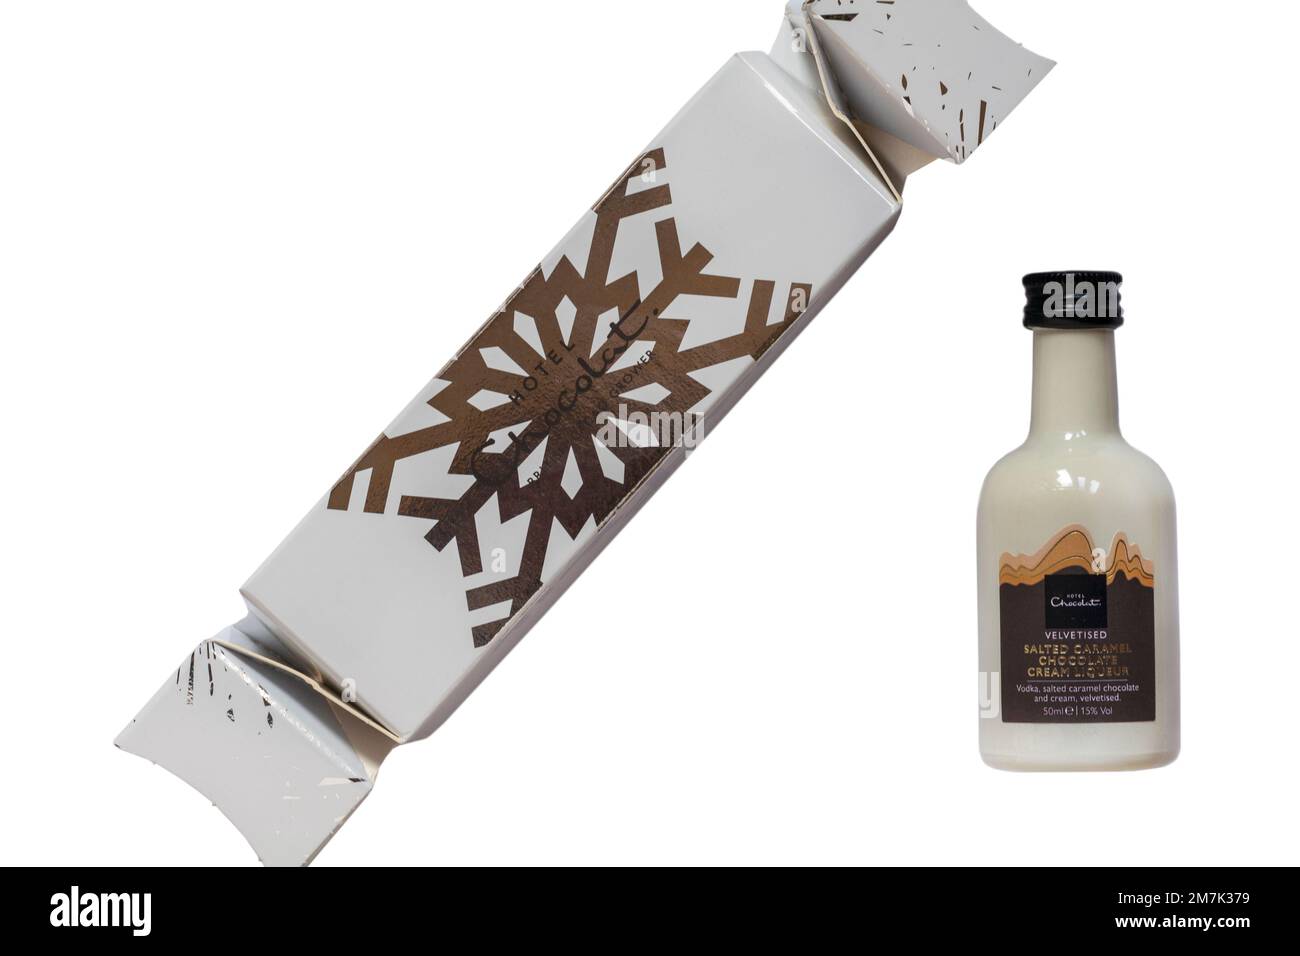 Bottiglia in miniatura di liquore di crema al cioccolato al caramello salato vellutato dell'Hotel Chocolat Premium Cracker Selection su sfondo bianco Foto Stock